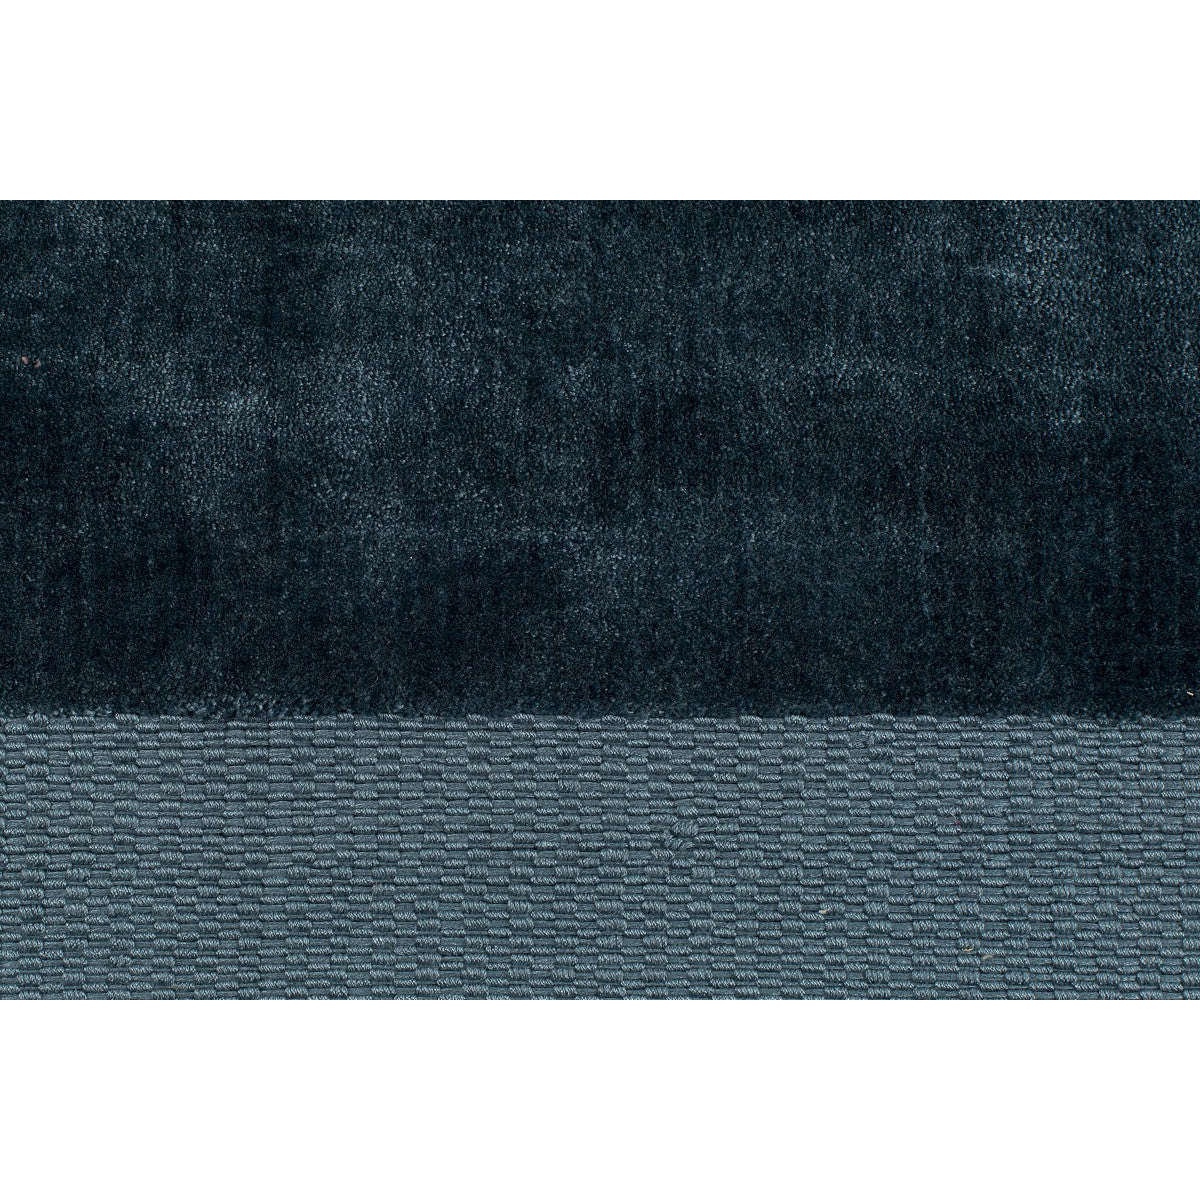 Zuiver vloerkleed blink blauw 240 x 170 x 0,6 cm